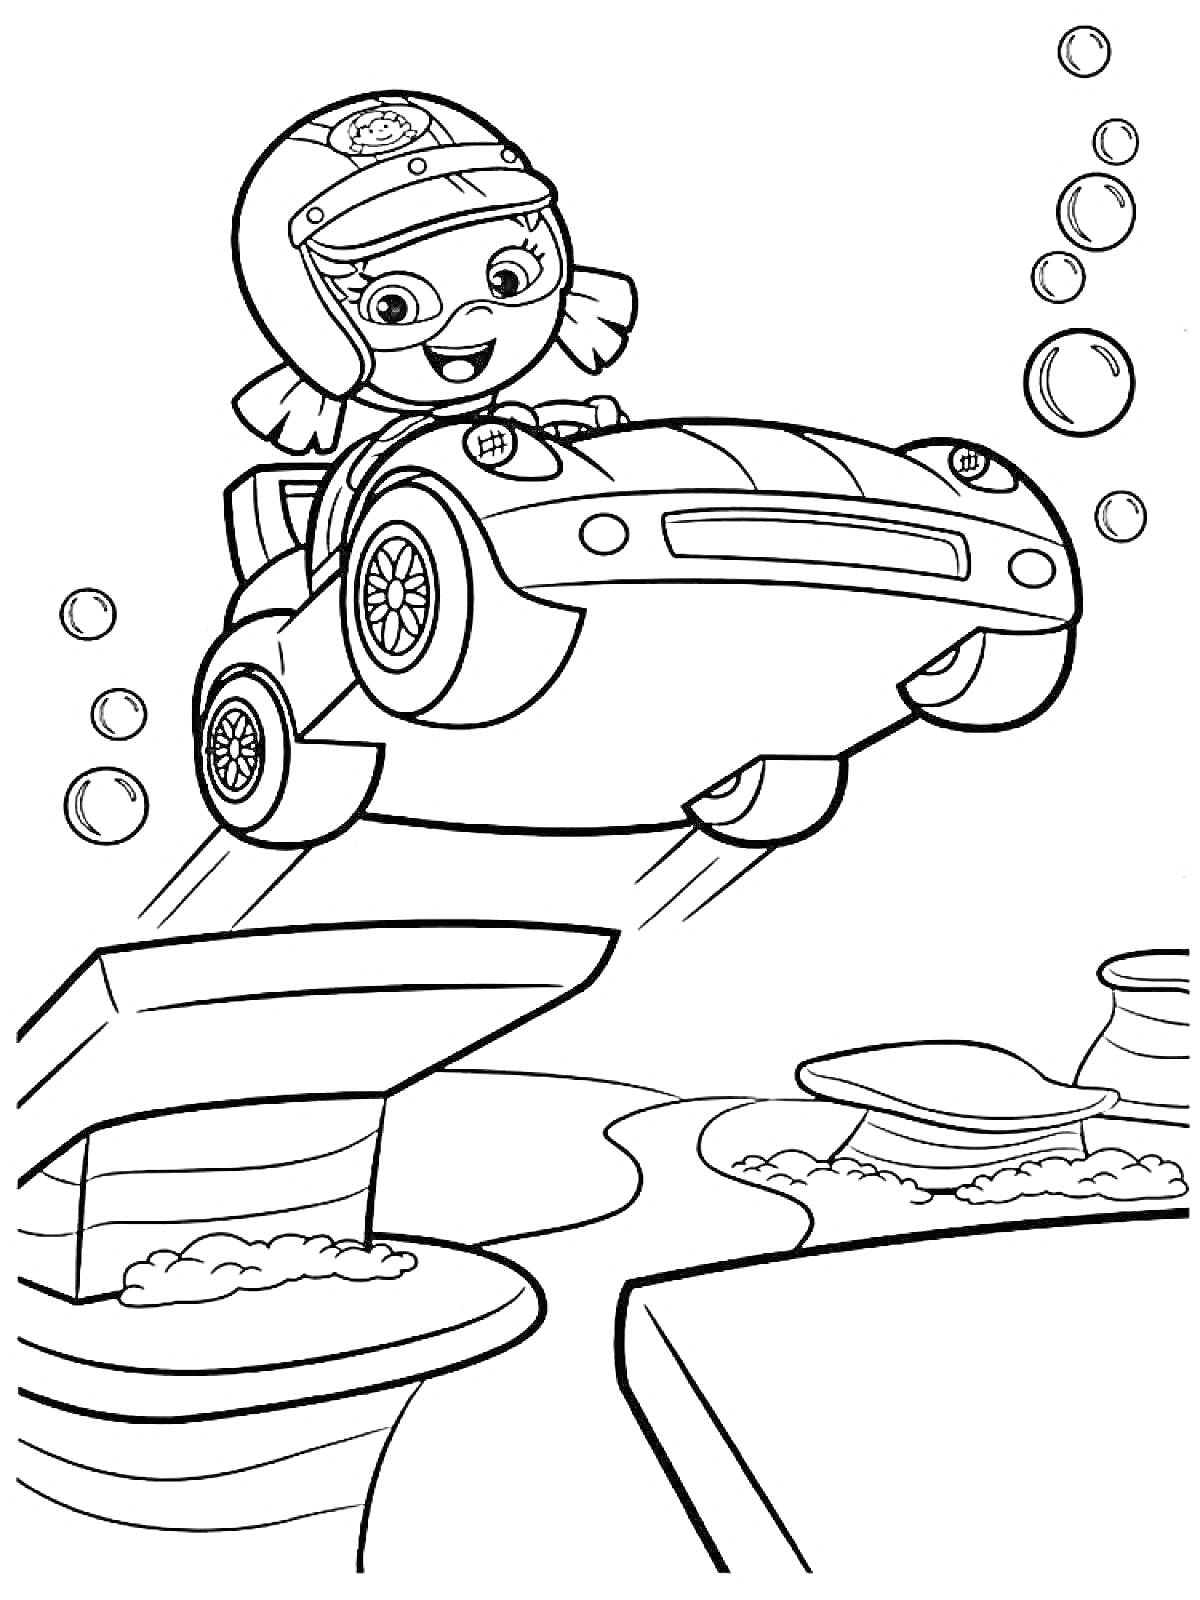 Раскраска Гуппи за рулем машины под водой с пузырьками и подводным ландшафтом